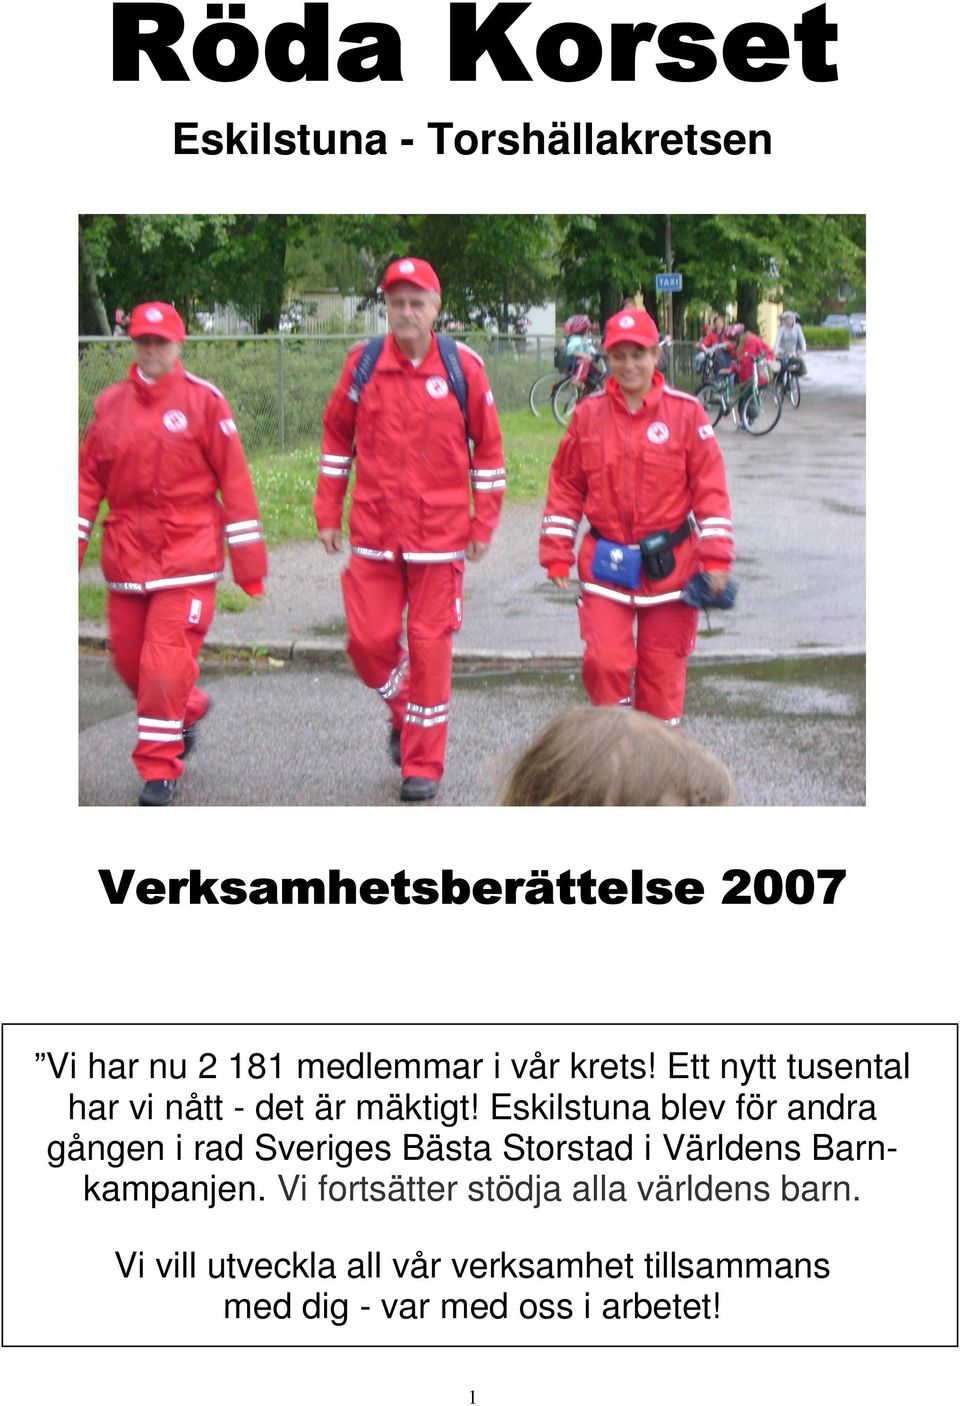 Eskilstuna blev för andra gången i rad Sveriges Bästa Storstad i Världens Barnkampanjen.